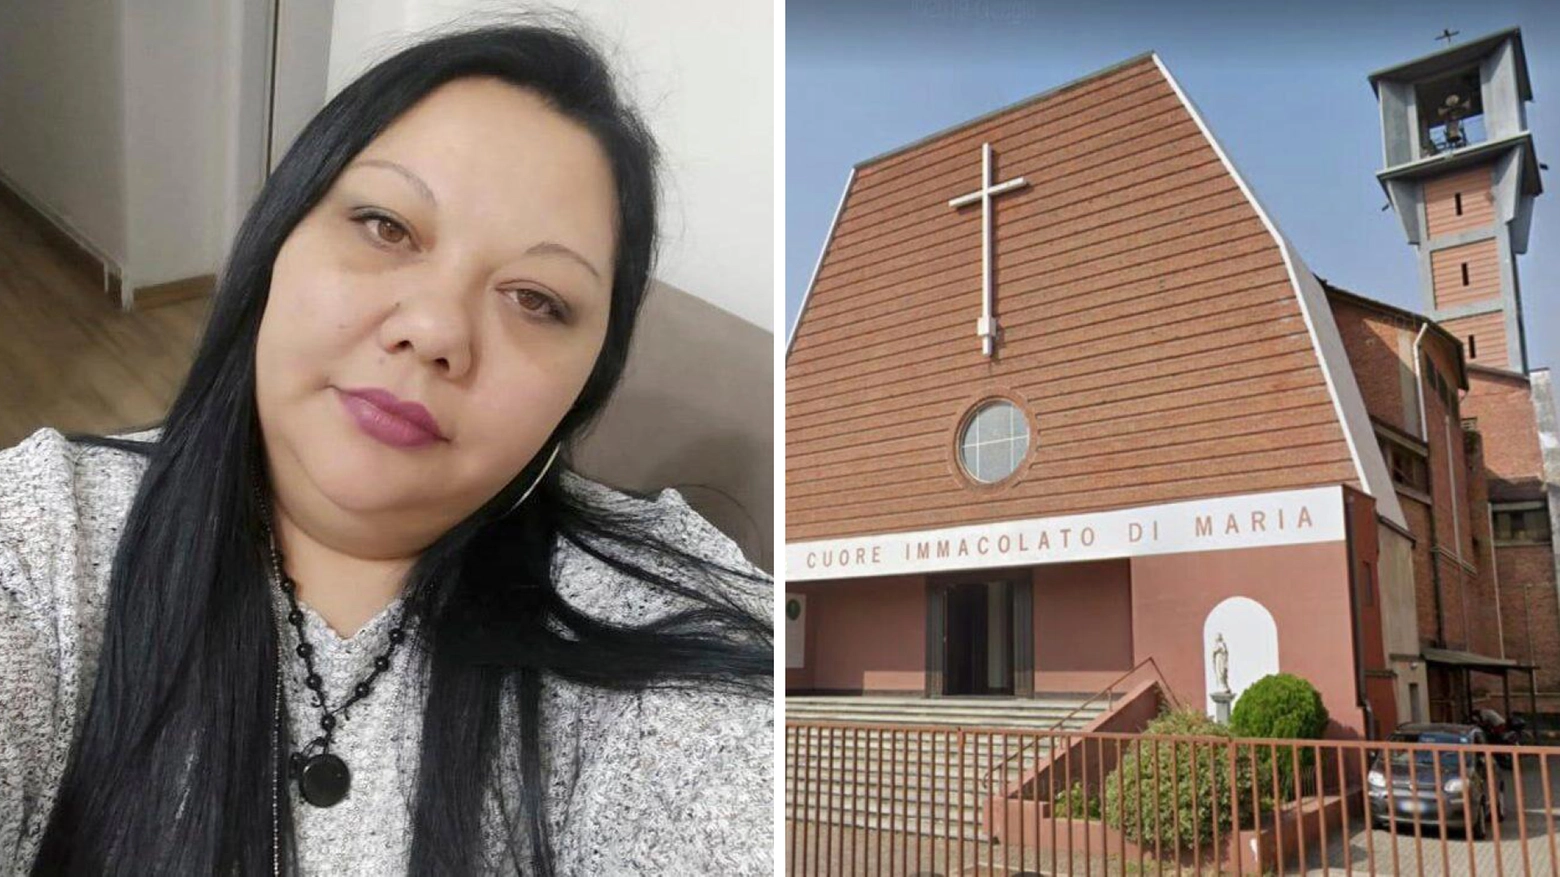 Marinela Murati aveva 39 anni. Venerdì è entrata nella chiesa della Madonna Pellegrina dove si stava svolgendo un funerale dando in escandescenze